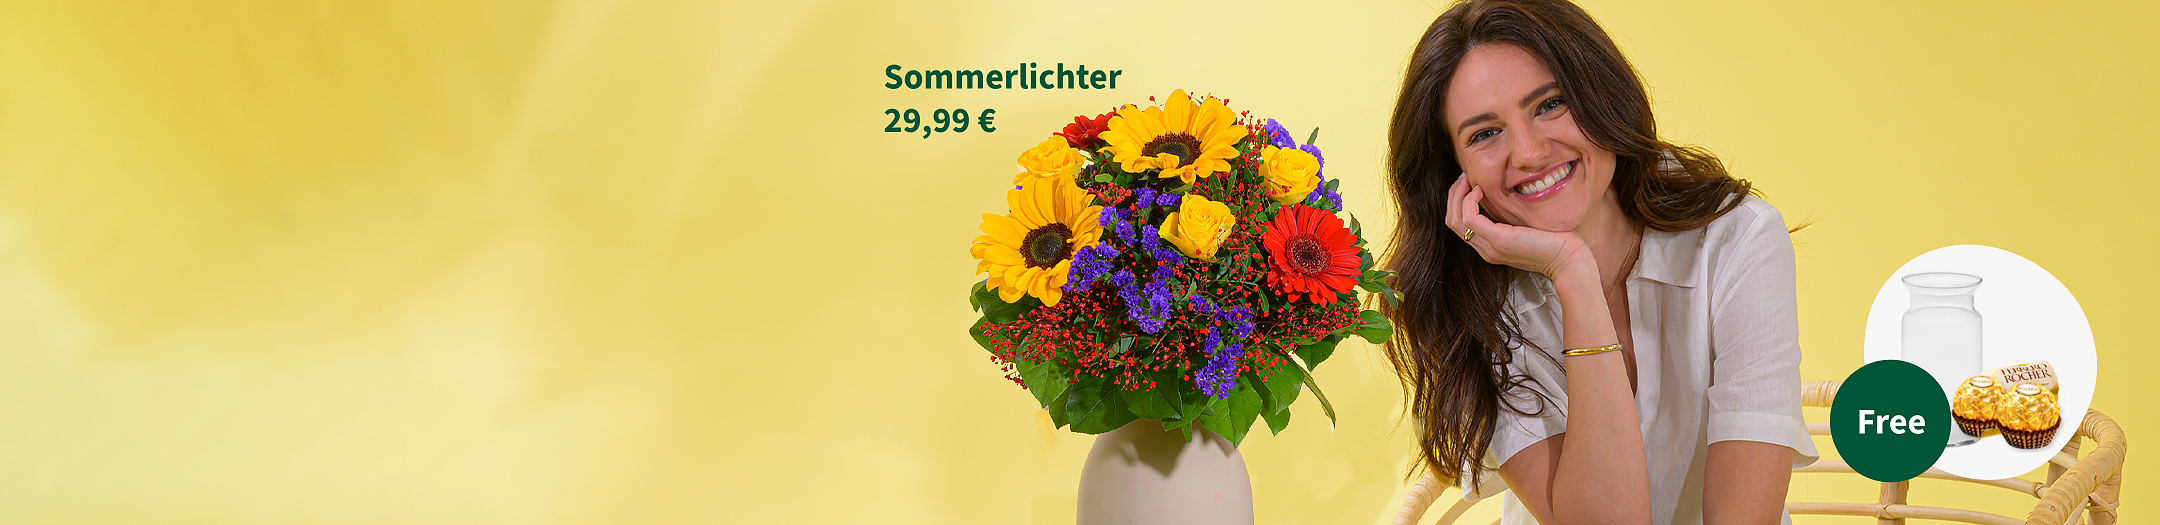 Flower Bouquet Sommerlichter € 29.99